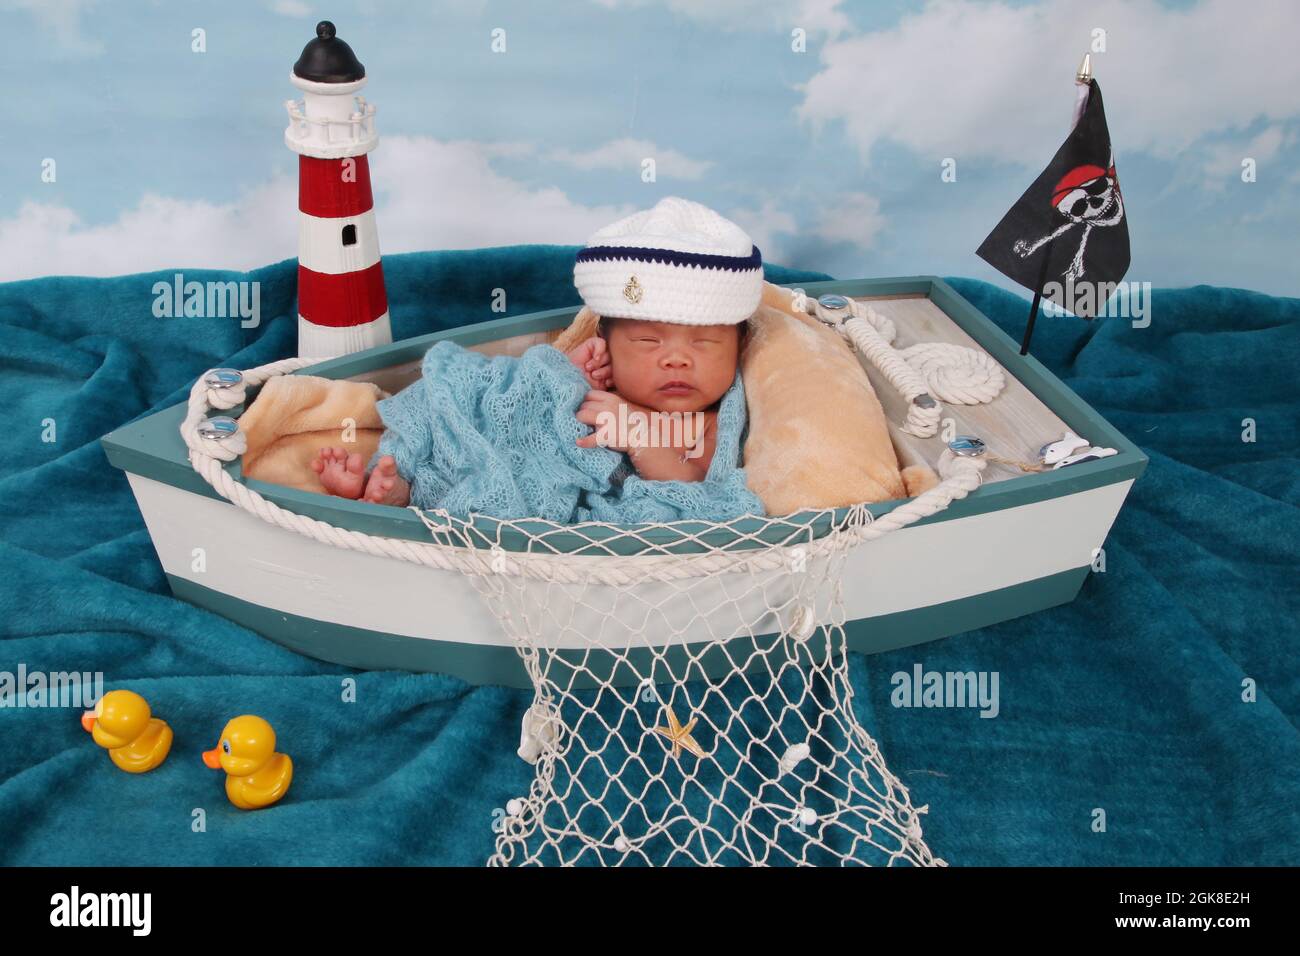 Niño recién nacido, Filipinas niño étnico en un barco relajante Foto de stock